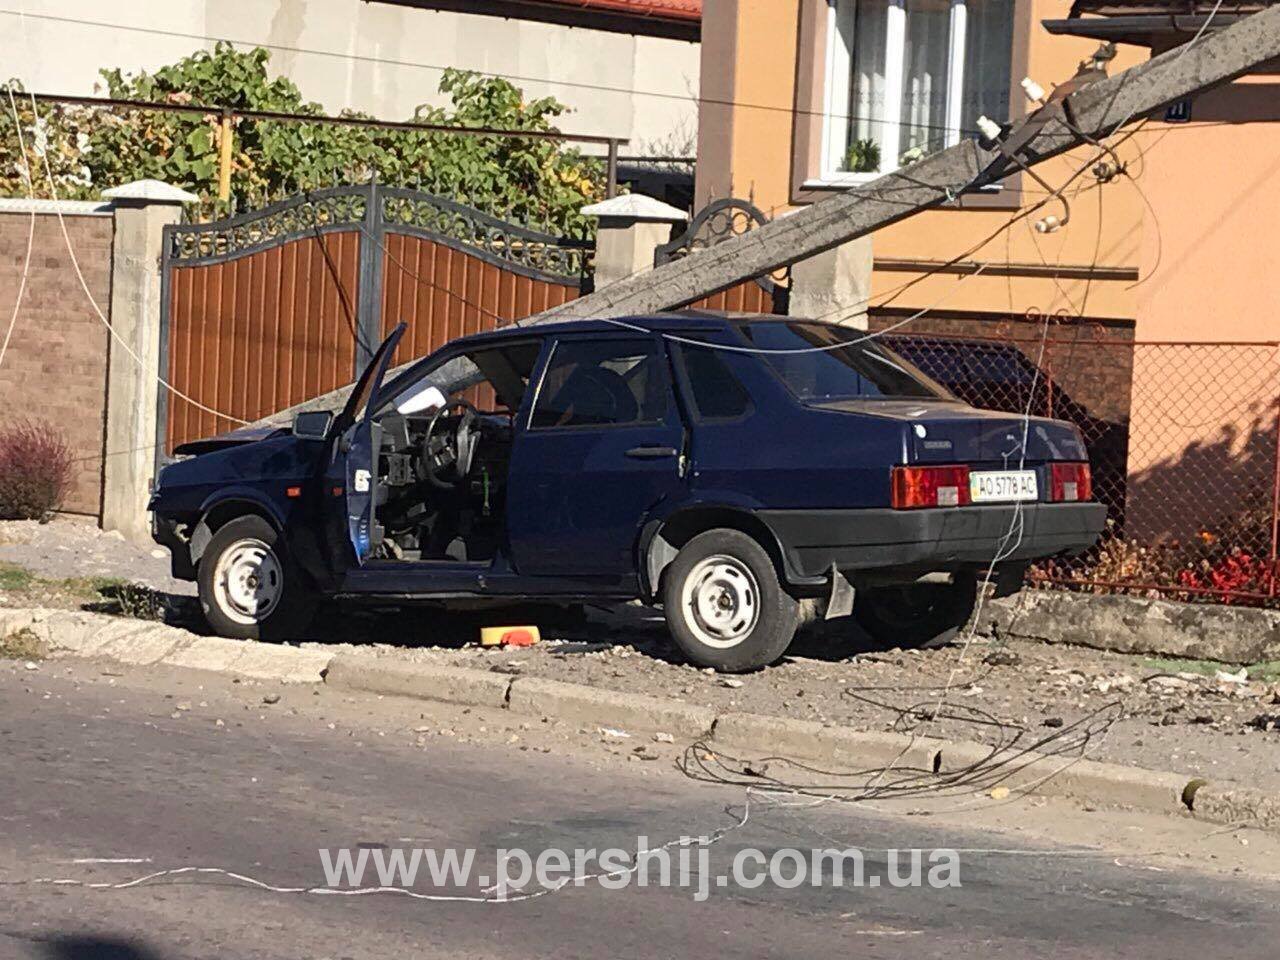 П'яний водій у Мукачеві збив електричний стовп (ВІДЕО+ФОТО)